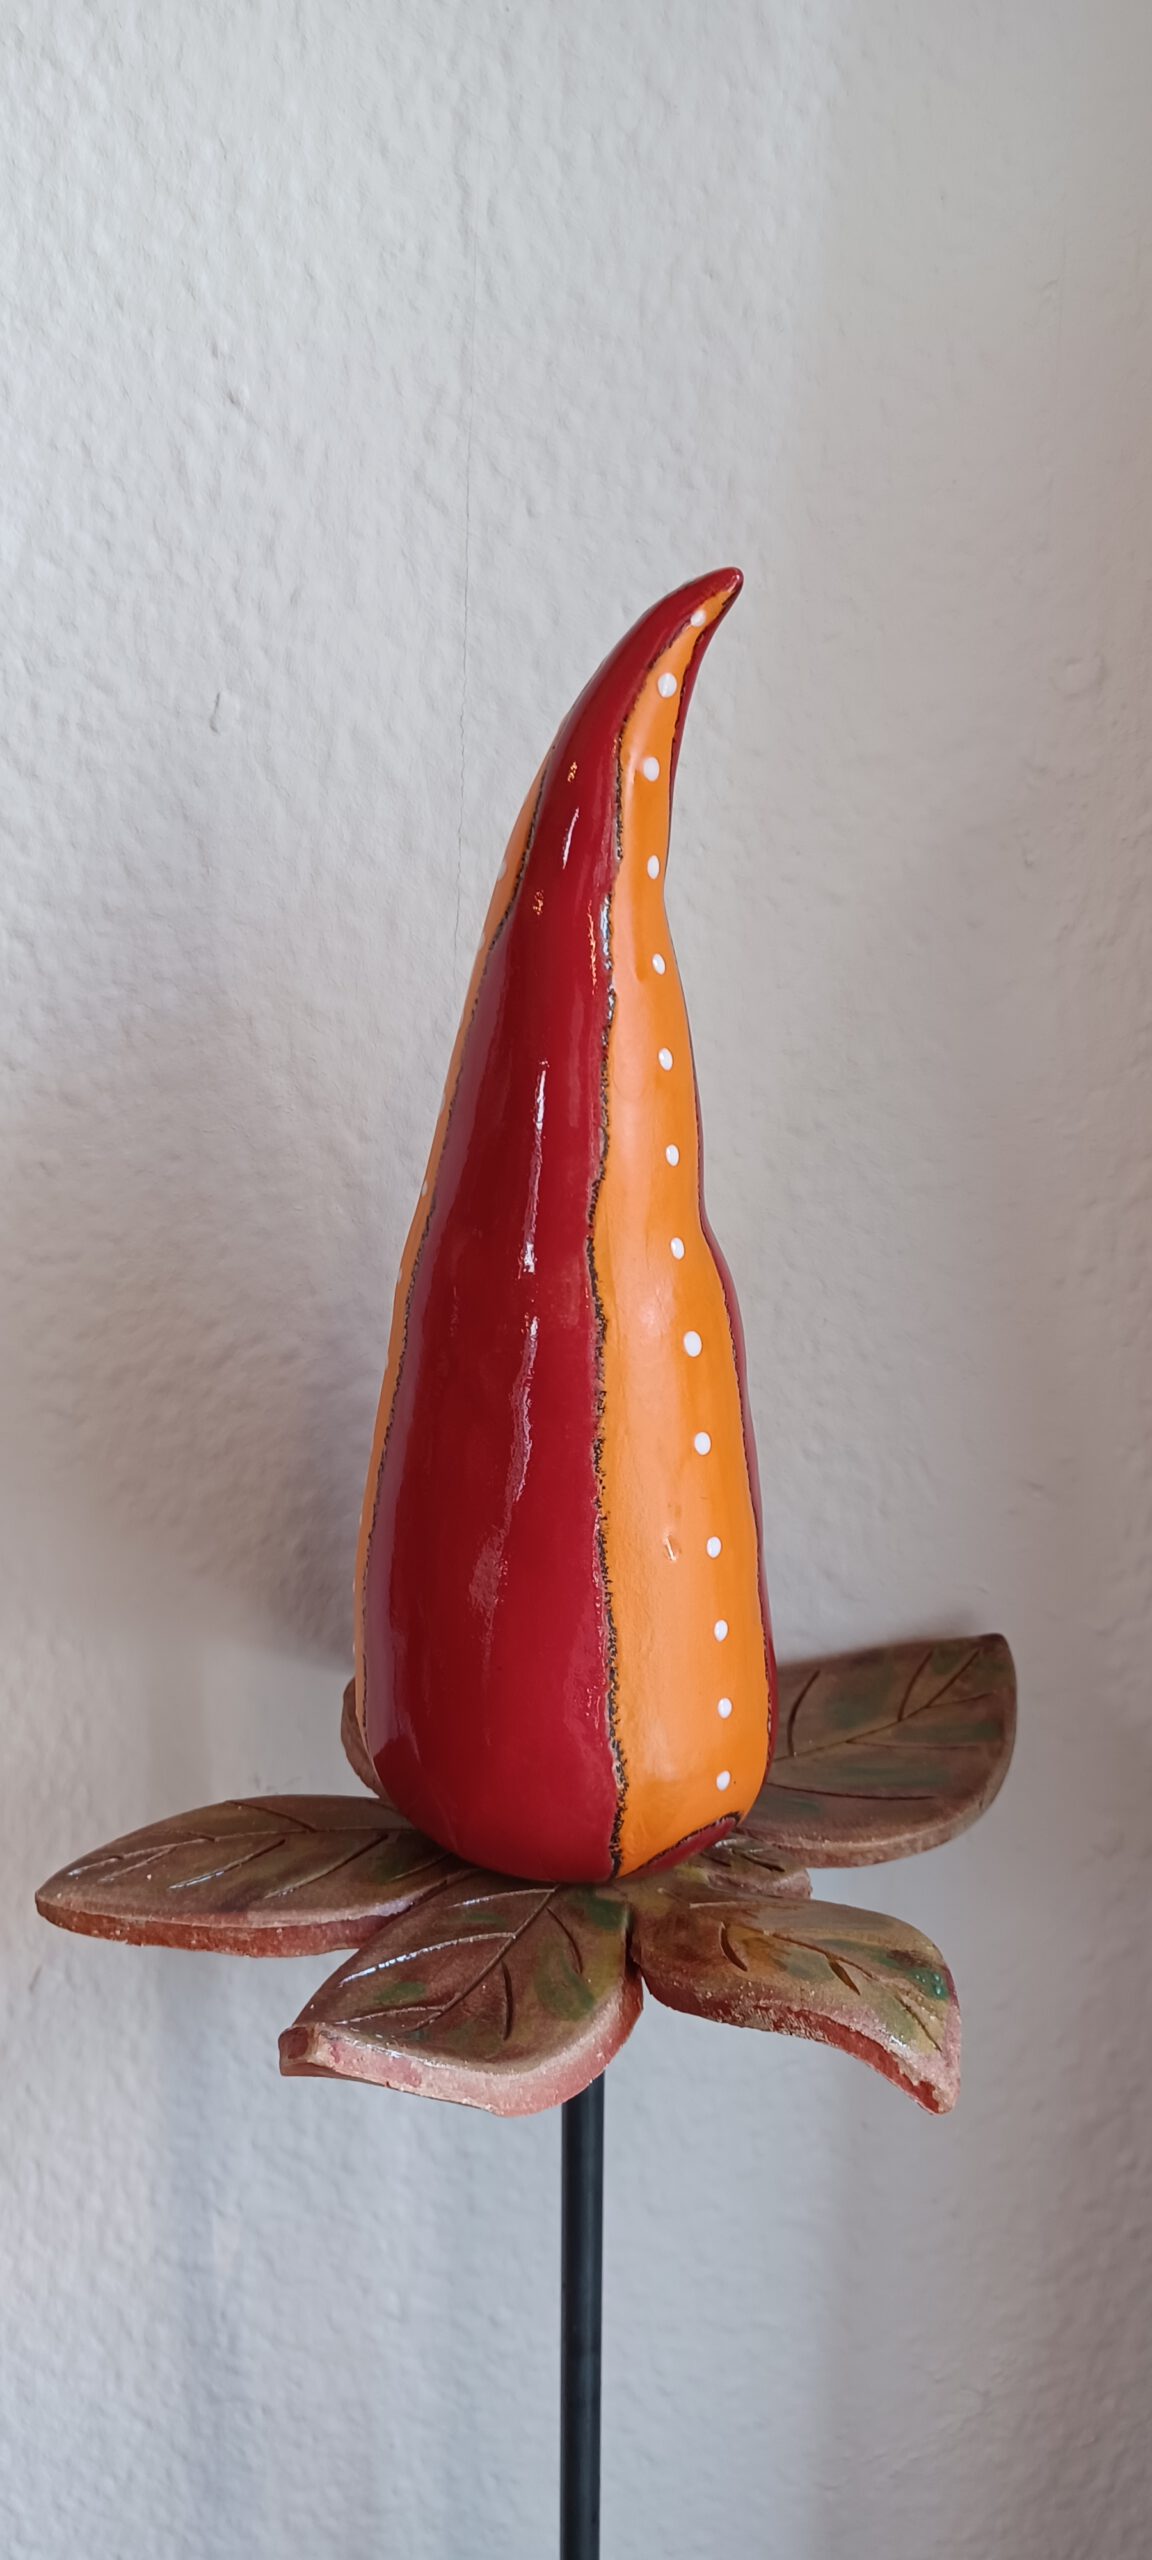 Keramik Gartenstecker, orange rote Fantasie Blume, originelle Keramik Stab Spitze, KeraMik von Herz zu Herz, Keramik Geschenk für den Garten, Stelen Spitze